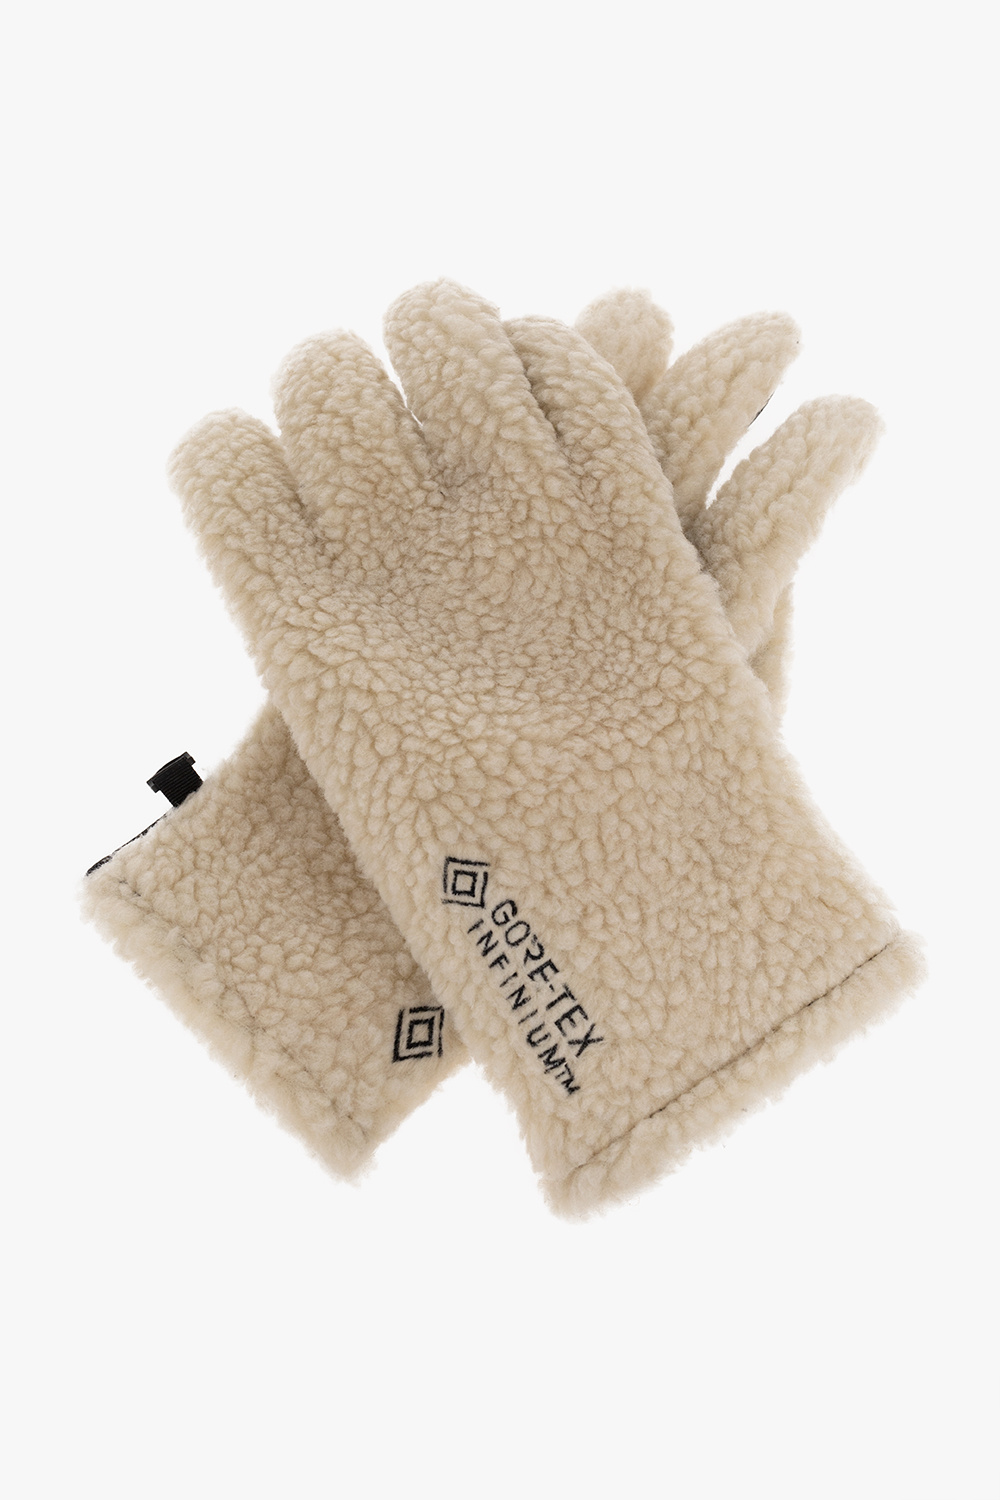 Samsøe Samsøe ‘Chan’ gloves